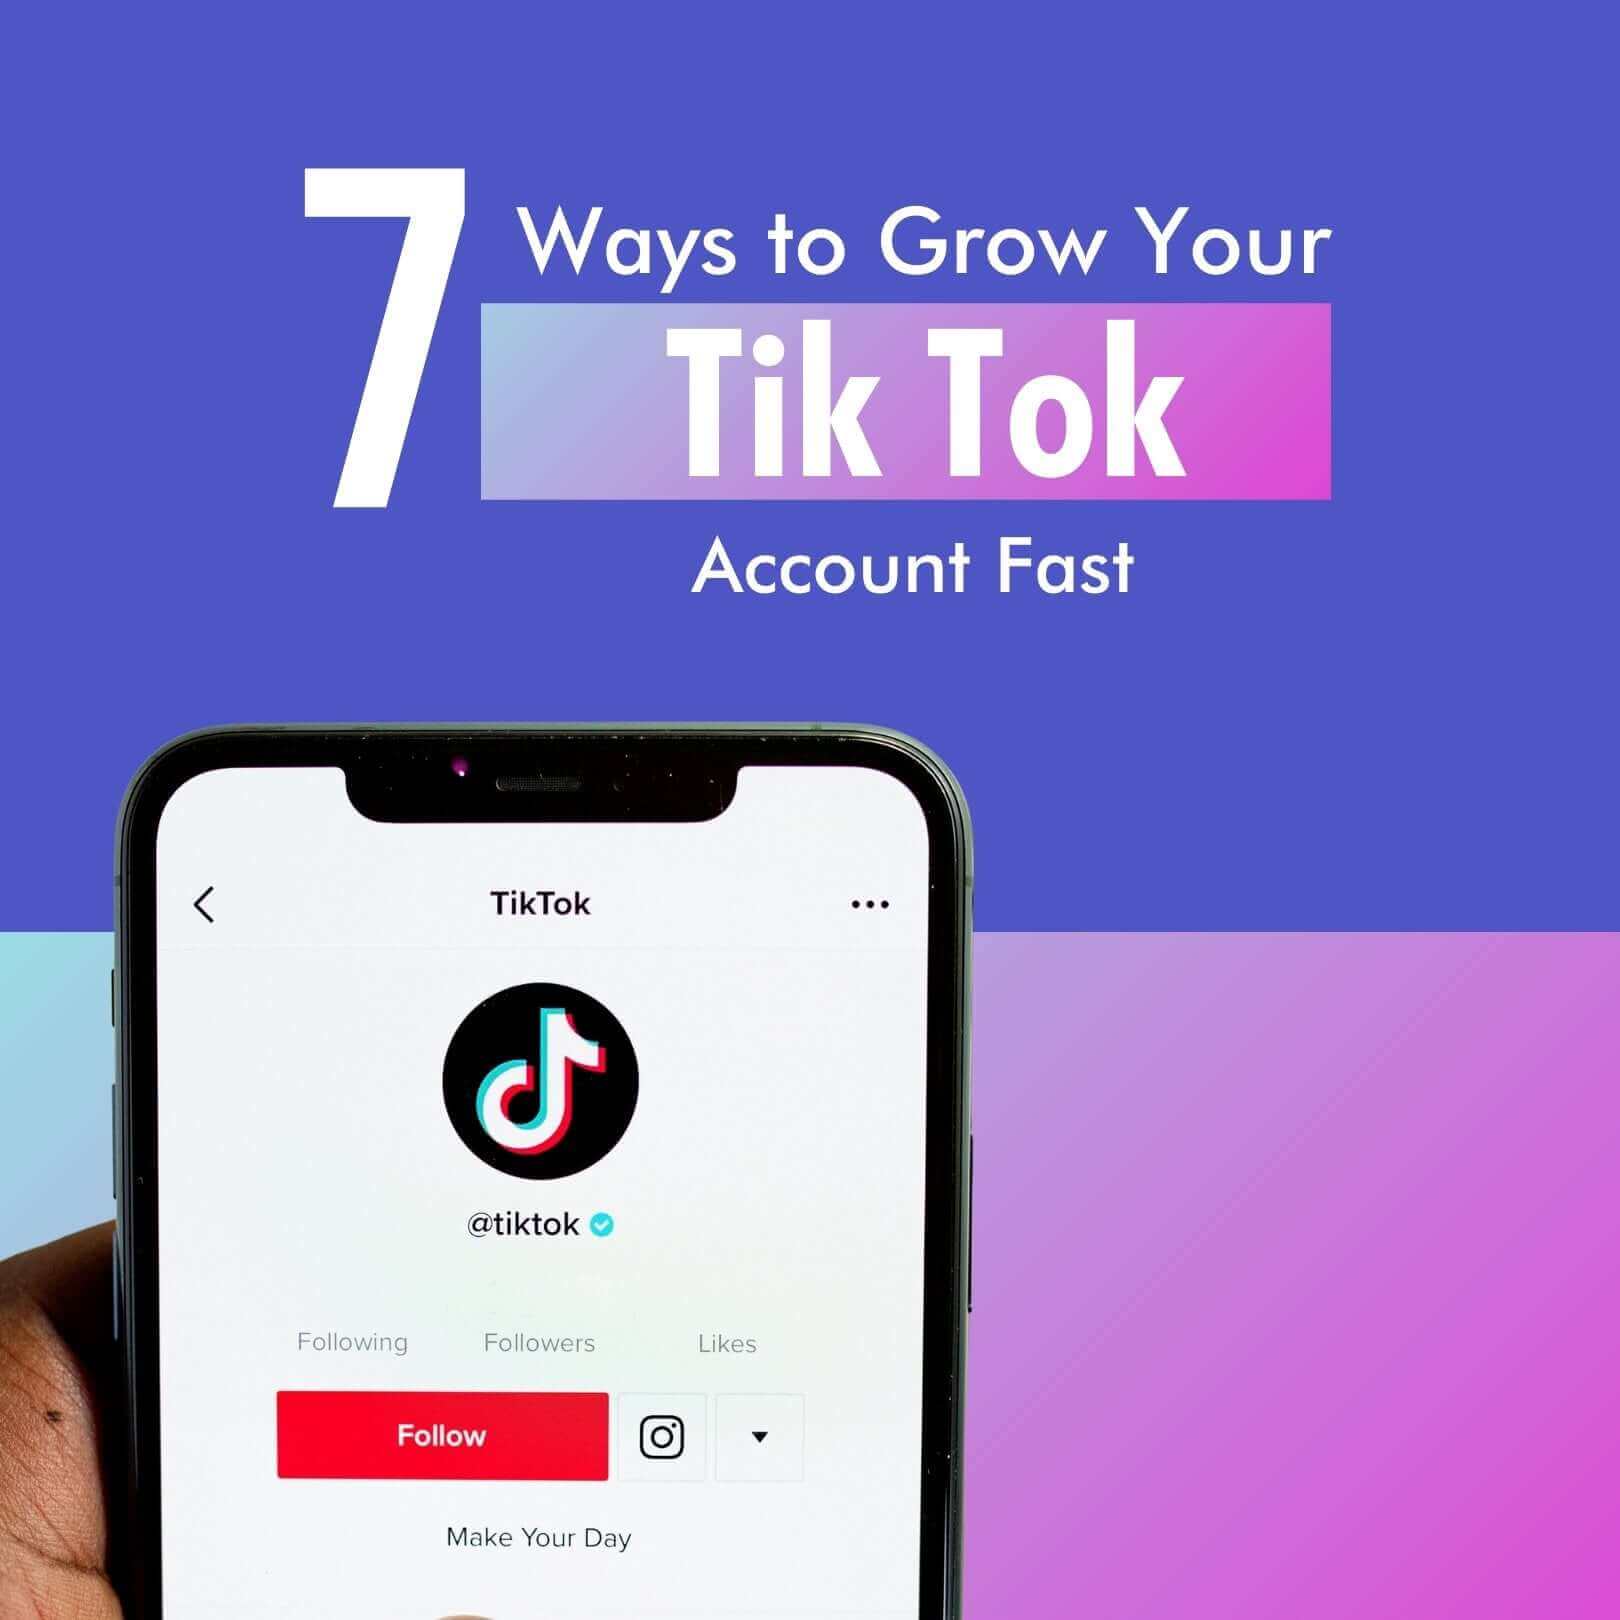 7 Ways to Grow Your Tik Tok Account Fast